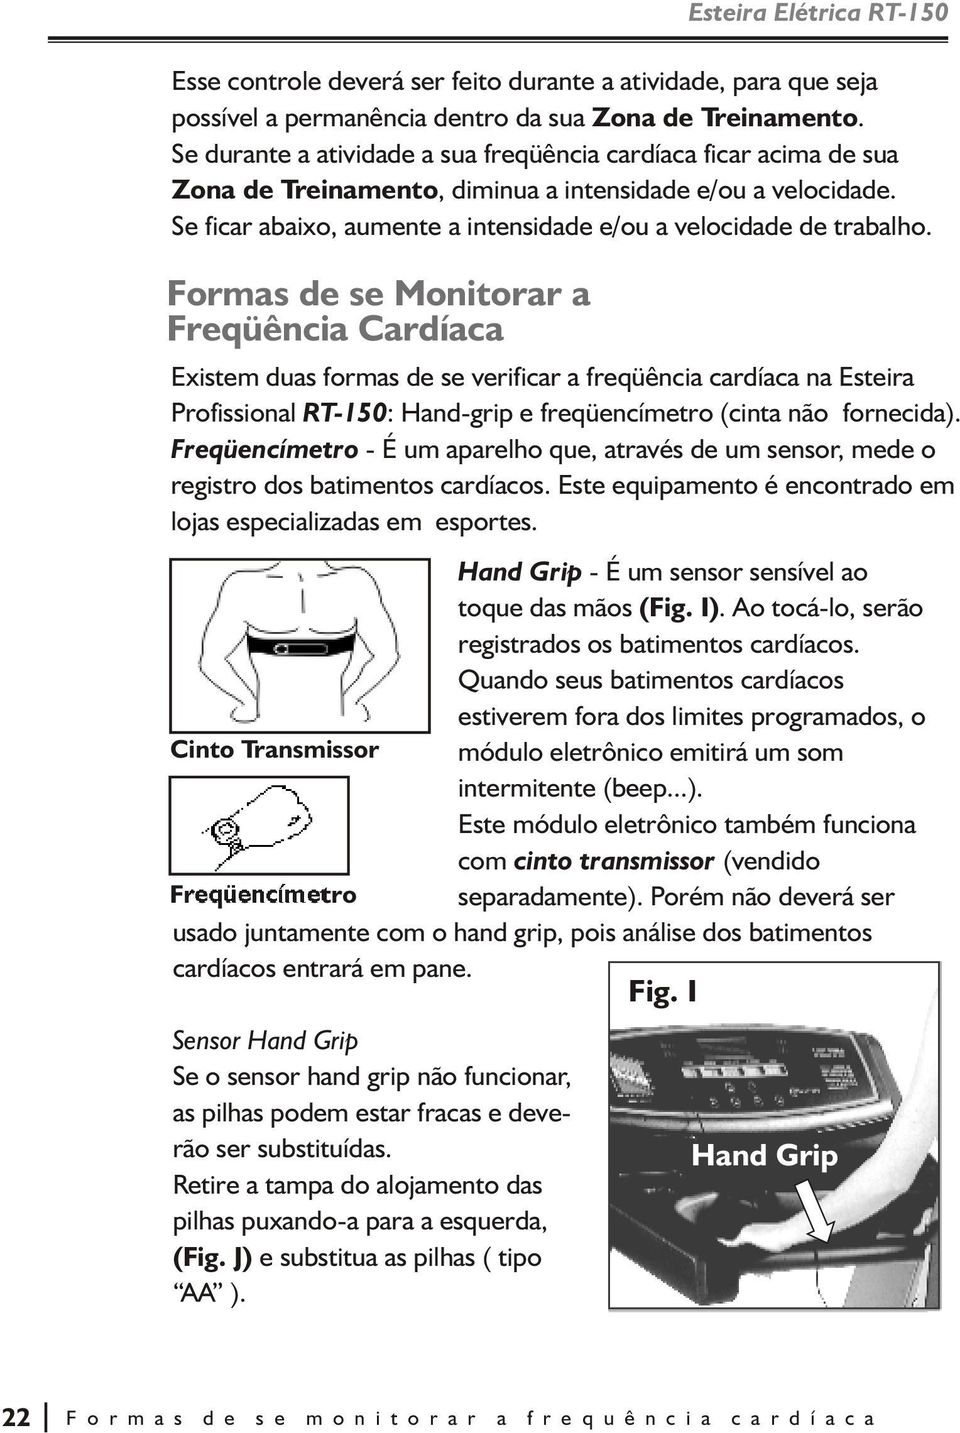 Formas de se Monitorar a Freqüência Cardíaca Existem duas formas de se verificar a freqüência cardíaca na Esteira Profissional RT-150: Hand-grip e freqüencímetro (cinta não fornecida).